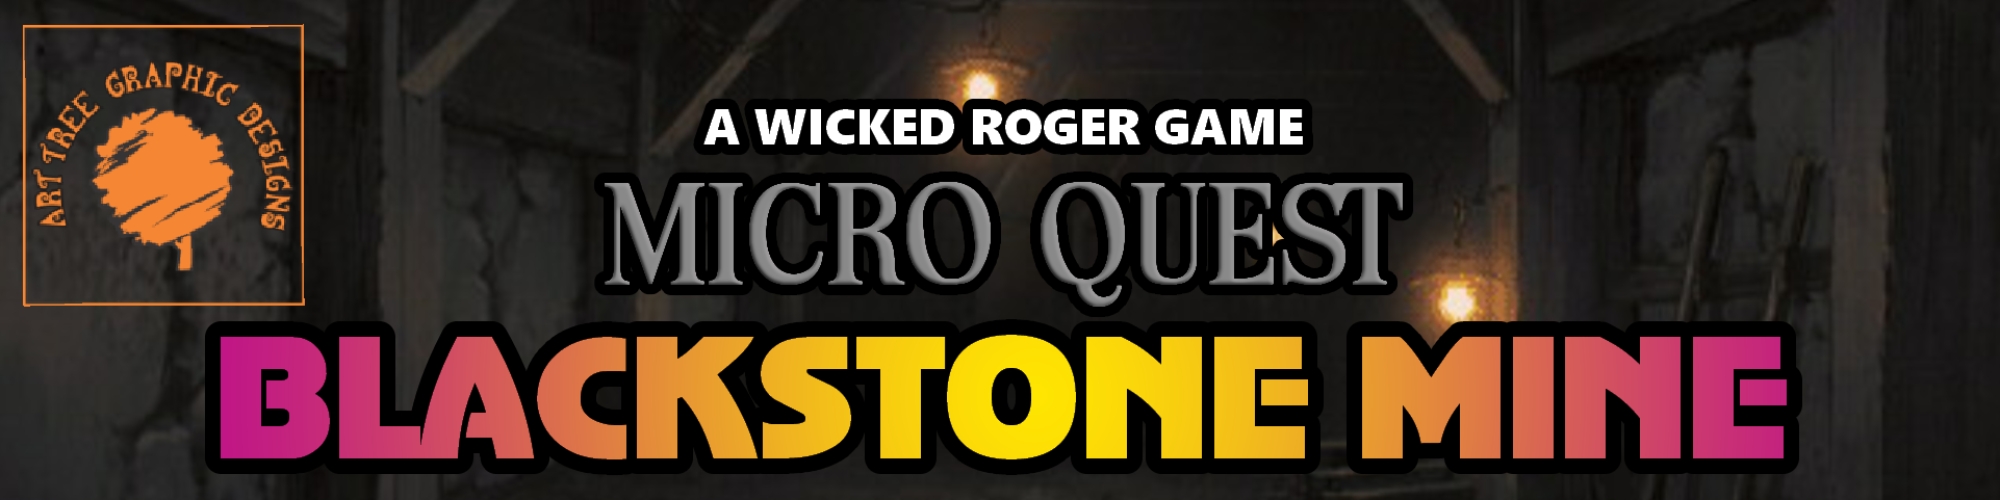 Micro Quest: Blackstone Mine